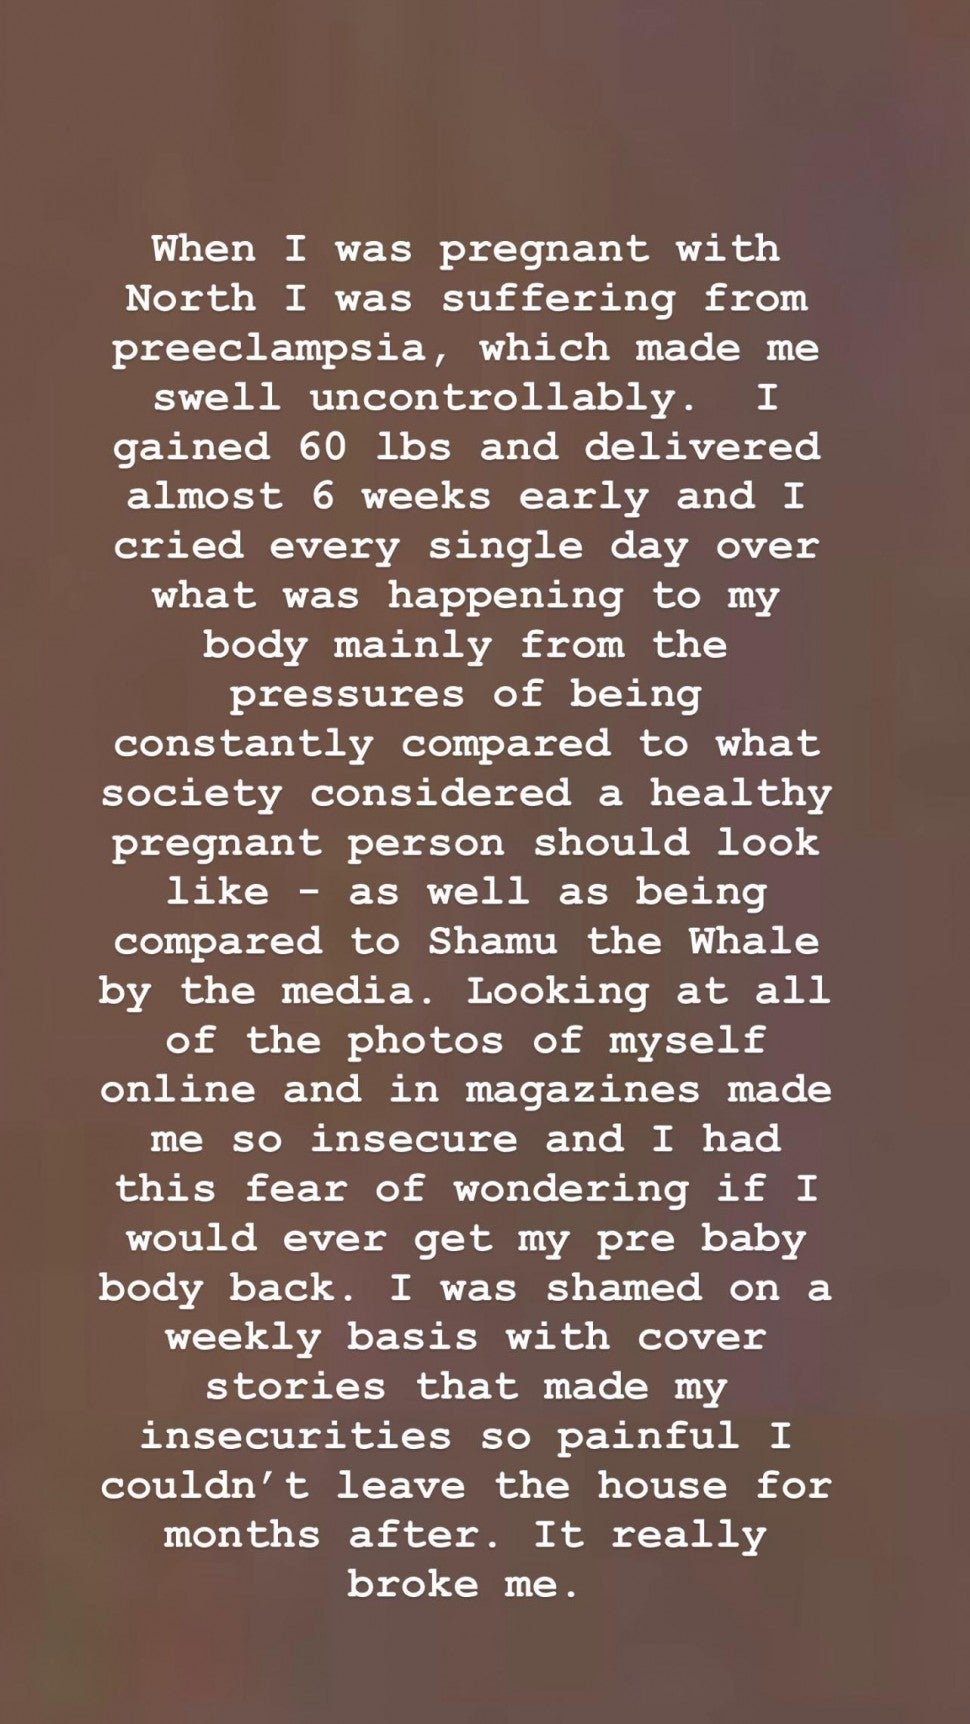 Kim Kardashian's Instagram Story